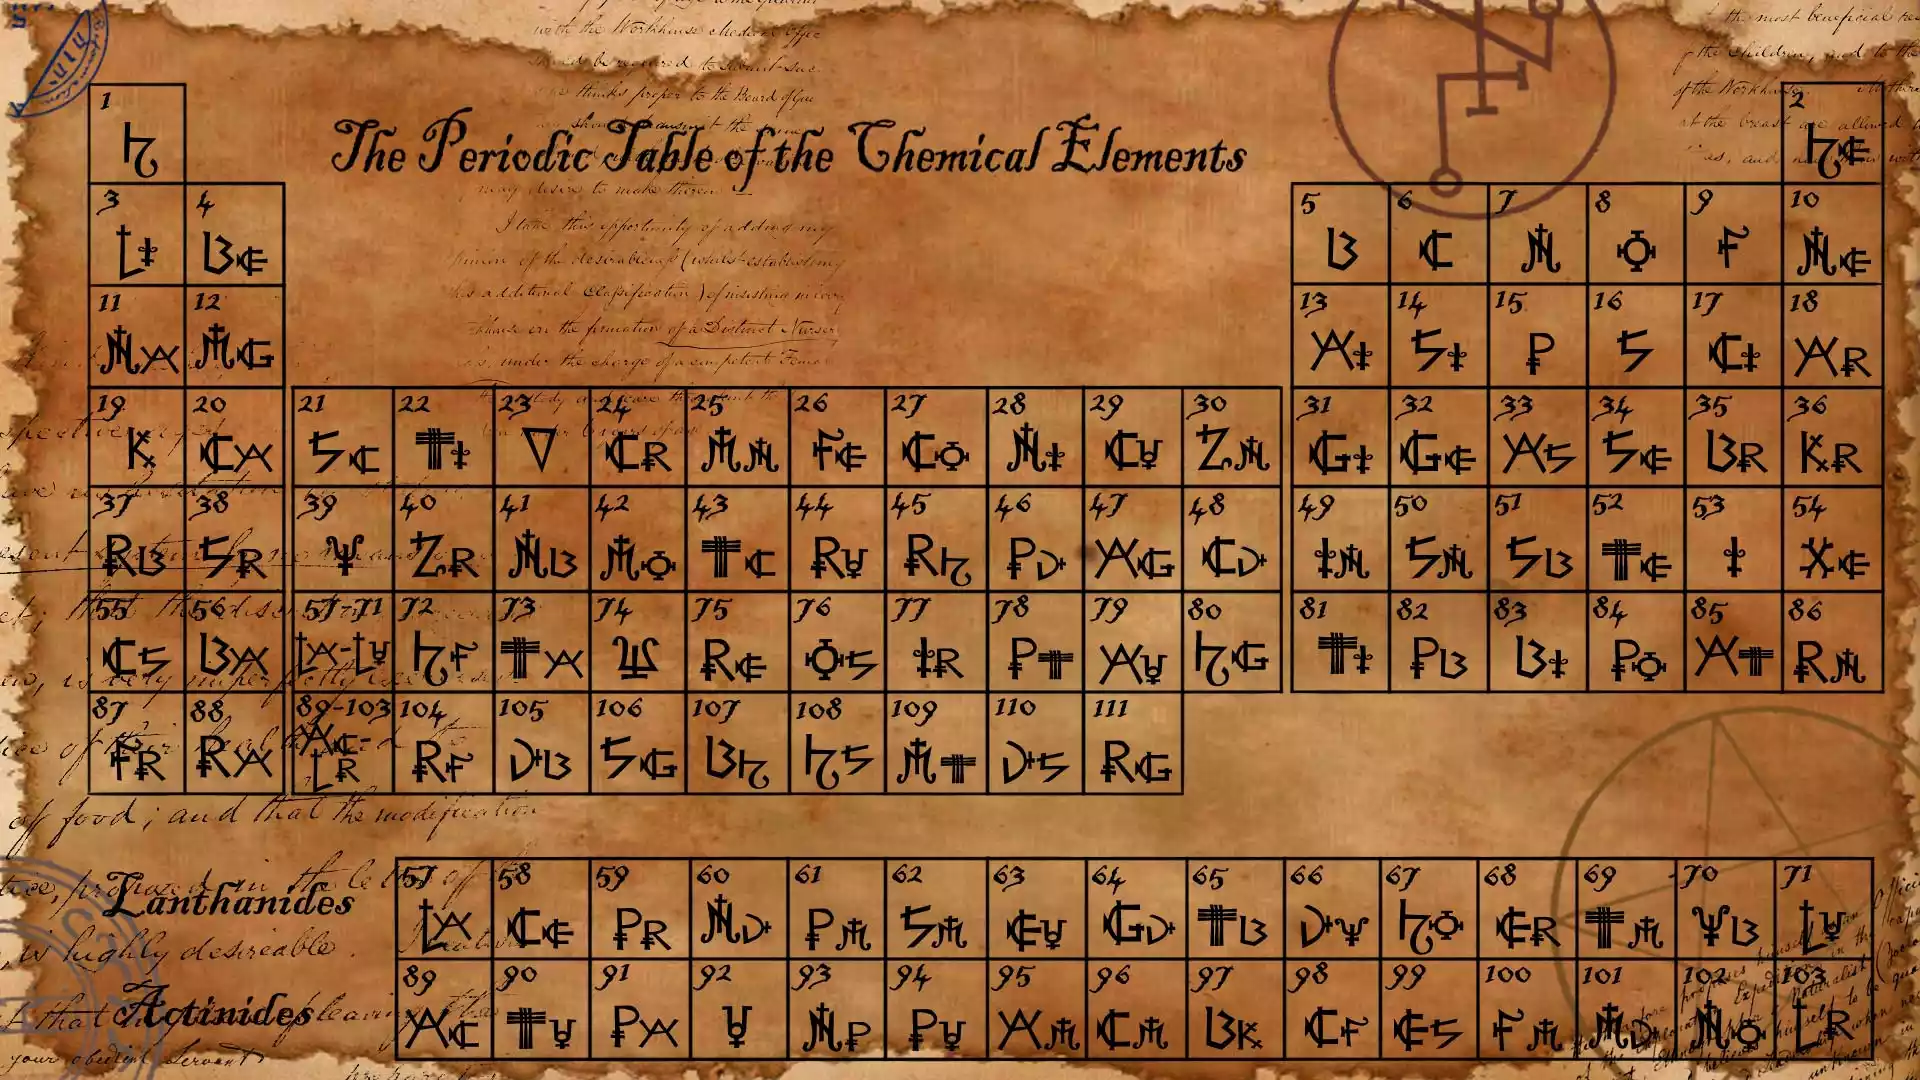 Χημικά στοιχεία - τα θεμελιώδη δομικά στοιχεία της ύλης. Εξερευνήστε τις ιδιότητες, τη δομή και τις αλληλεπιδράσεις των 118 στοιχείων του Περιοδικού Πίνακα